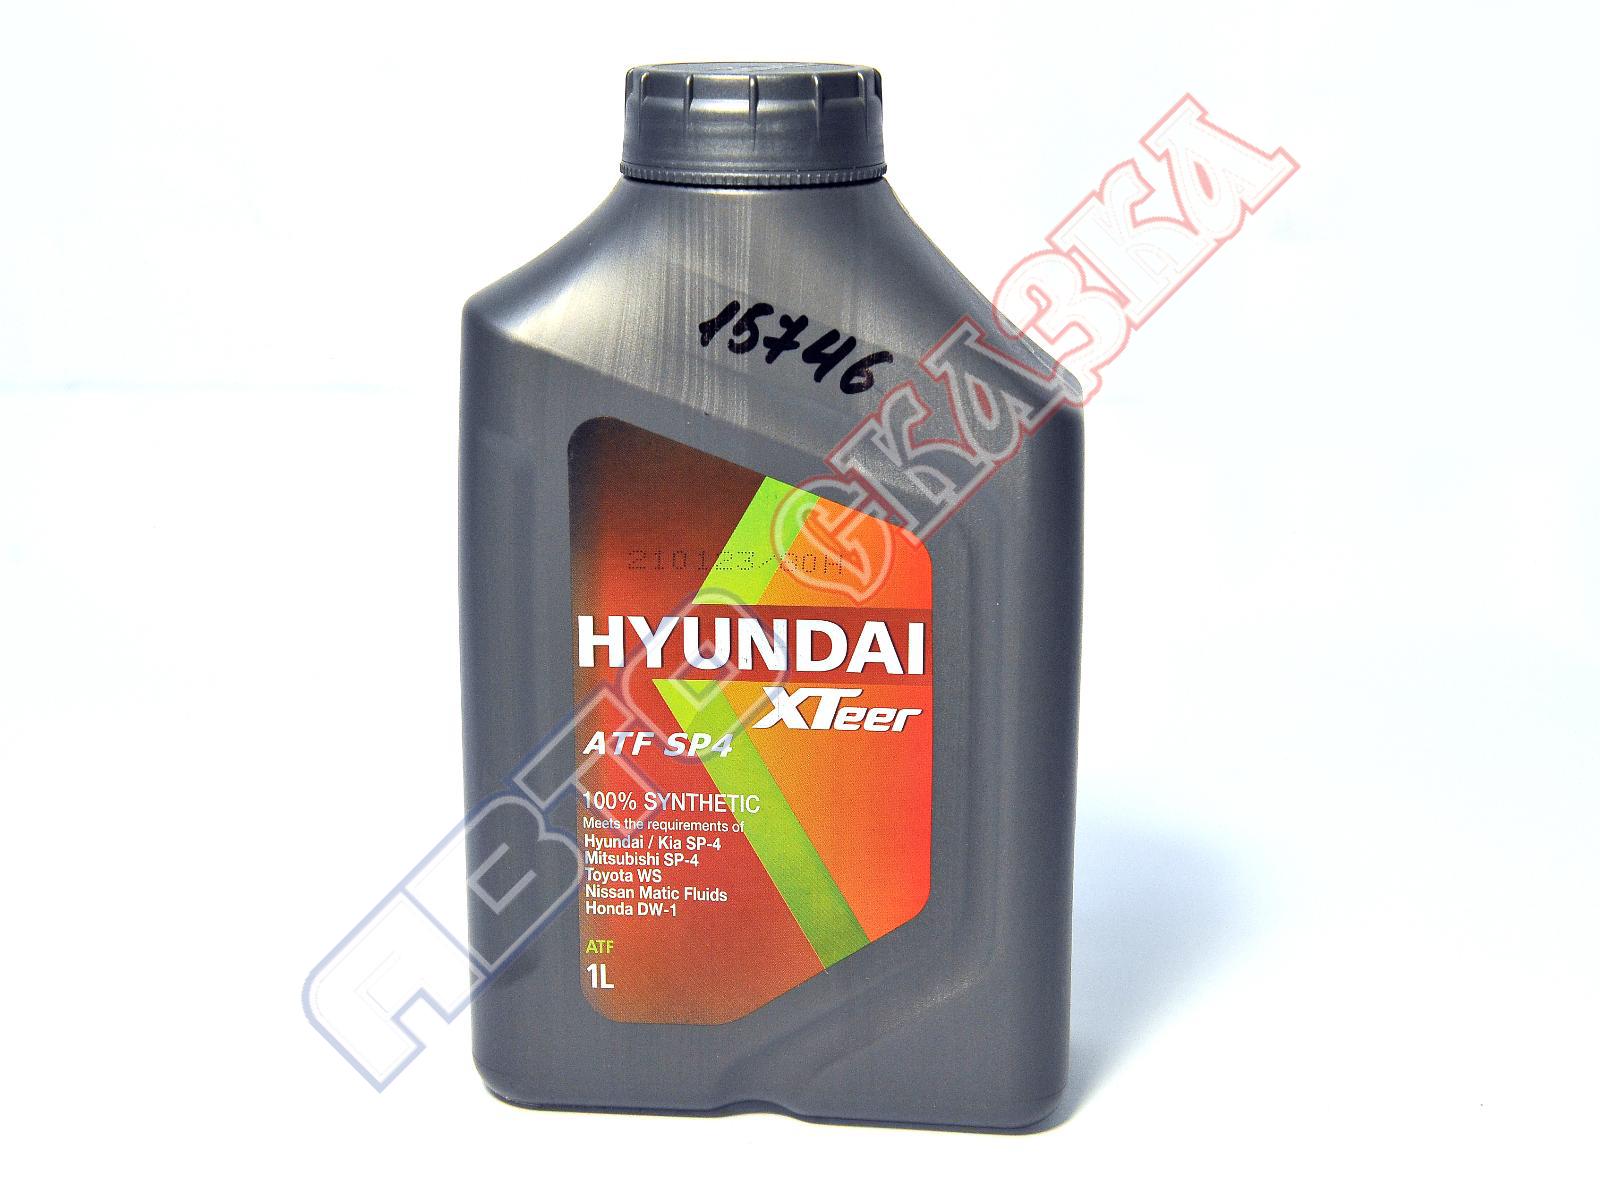 Hyundai XTEER ATF sp4 (1л). Hyundai XTEER ATF CVT код детали. ATF sp4 цвет масла. Hyundai XTEER ATF CVT.